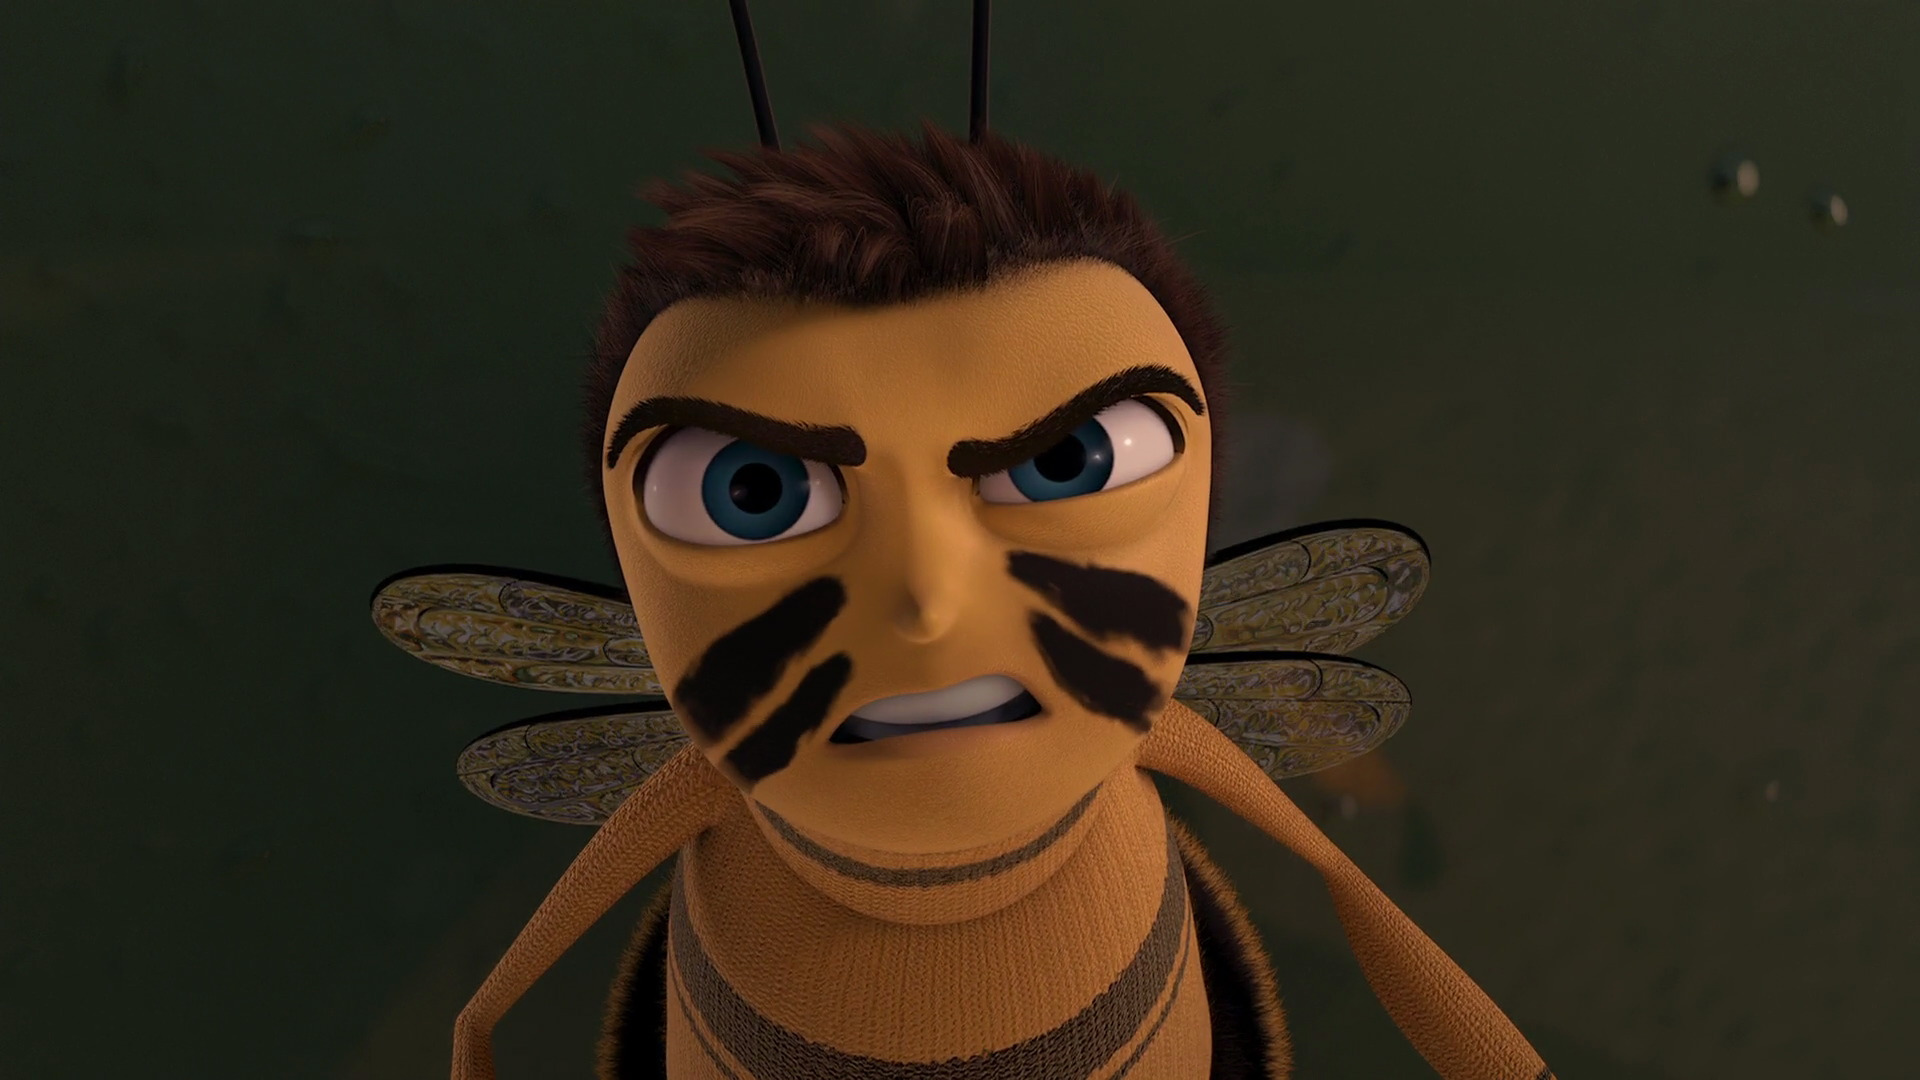 Bee movie app download 2017